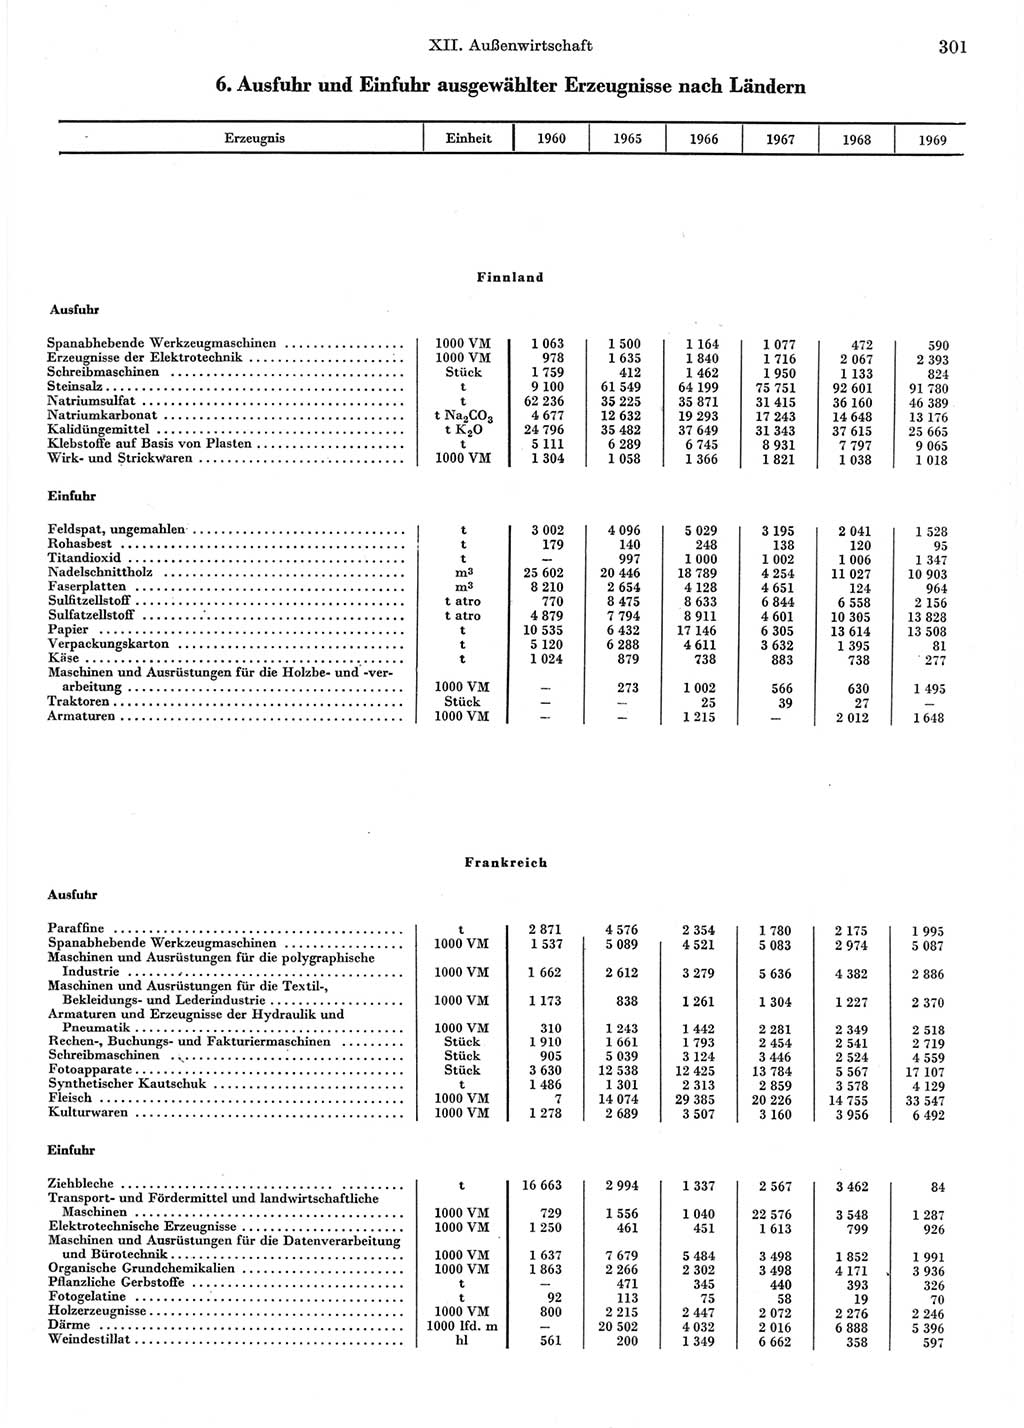 Statistisches Jahrbuch der Deutschen Demokratischen Republik (DDR) 1970, Seite 301 (Stat. Jb. DDR 1970, S. 301)